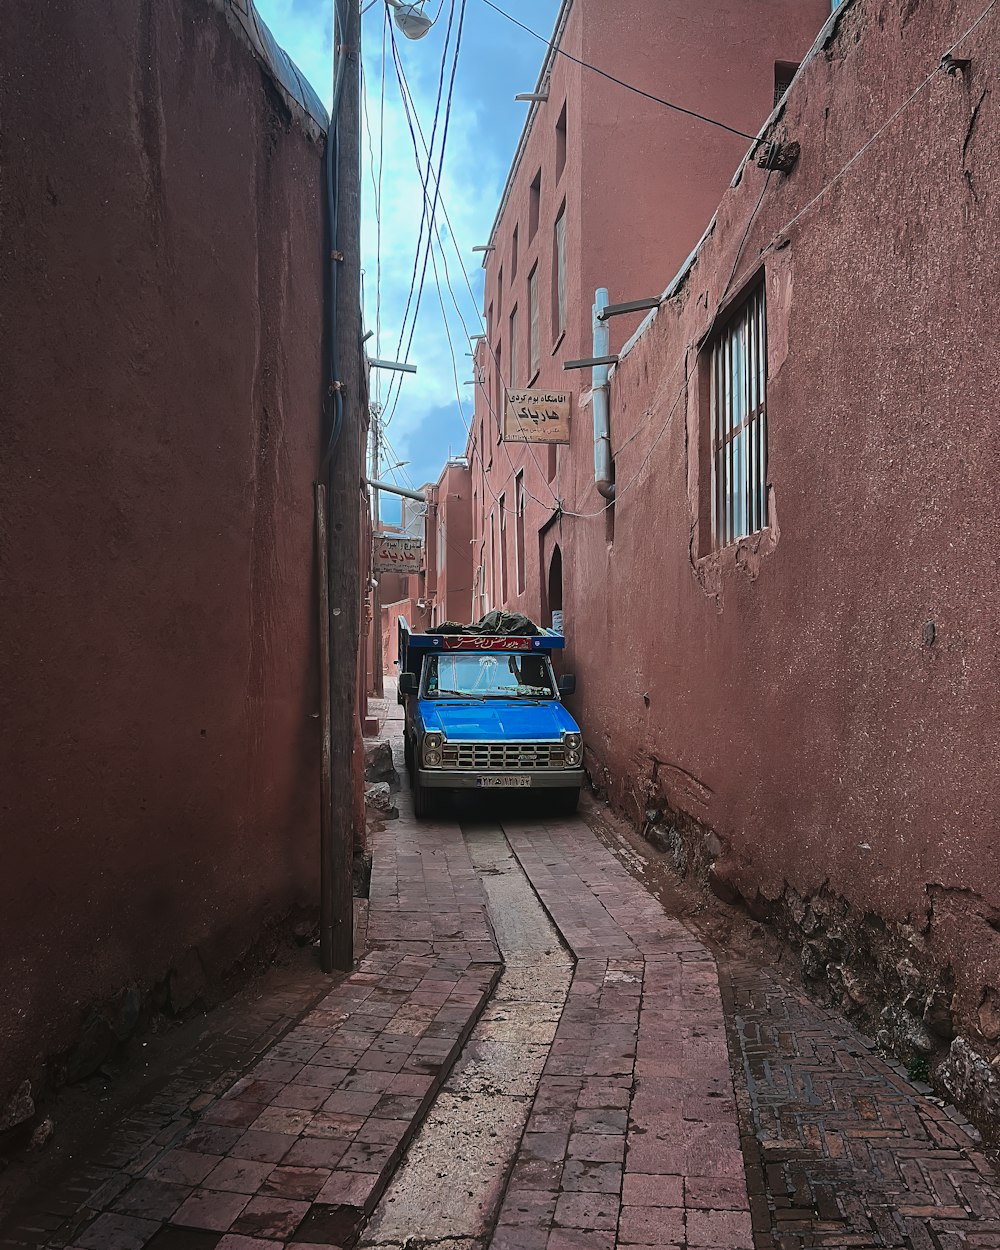 Ein blauer Lastwagen, der am Rand einer gemauerten Straße geparkt ist